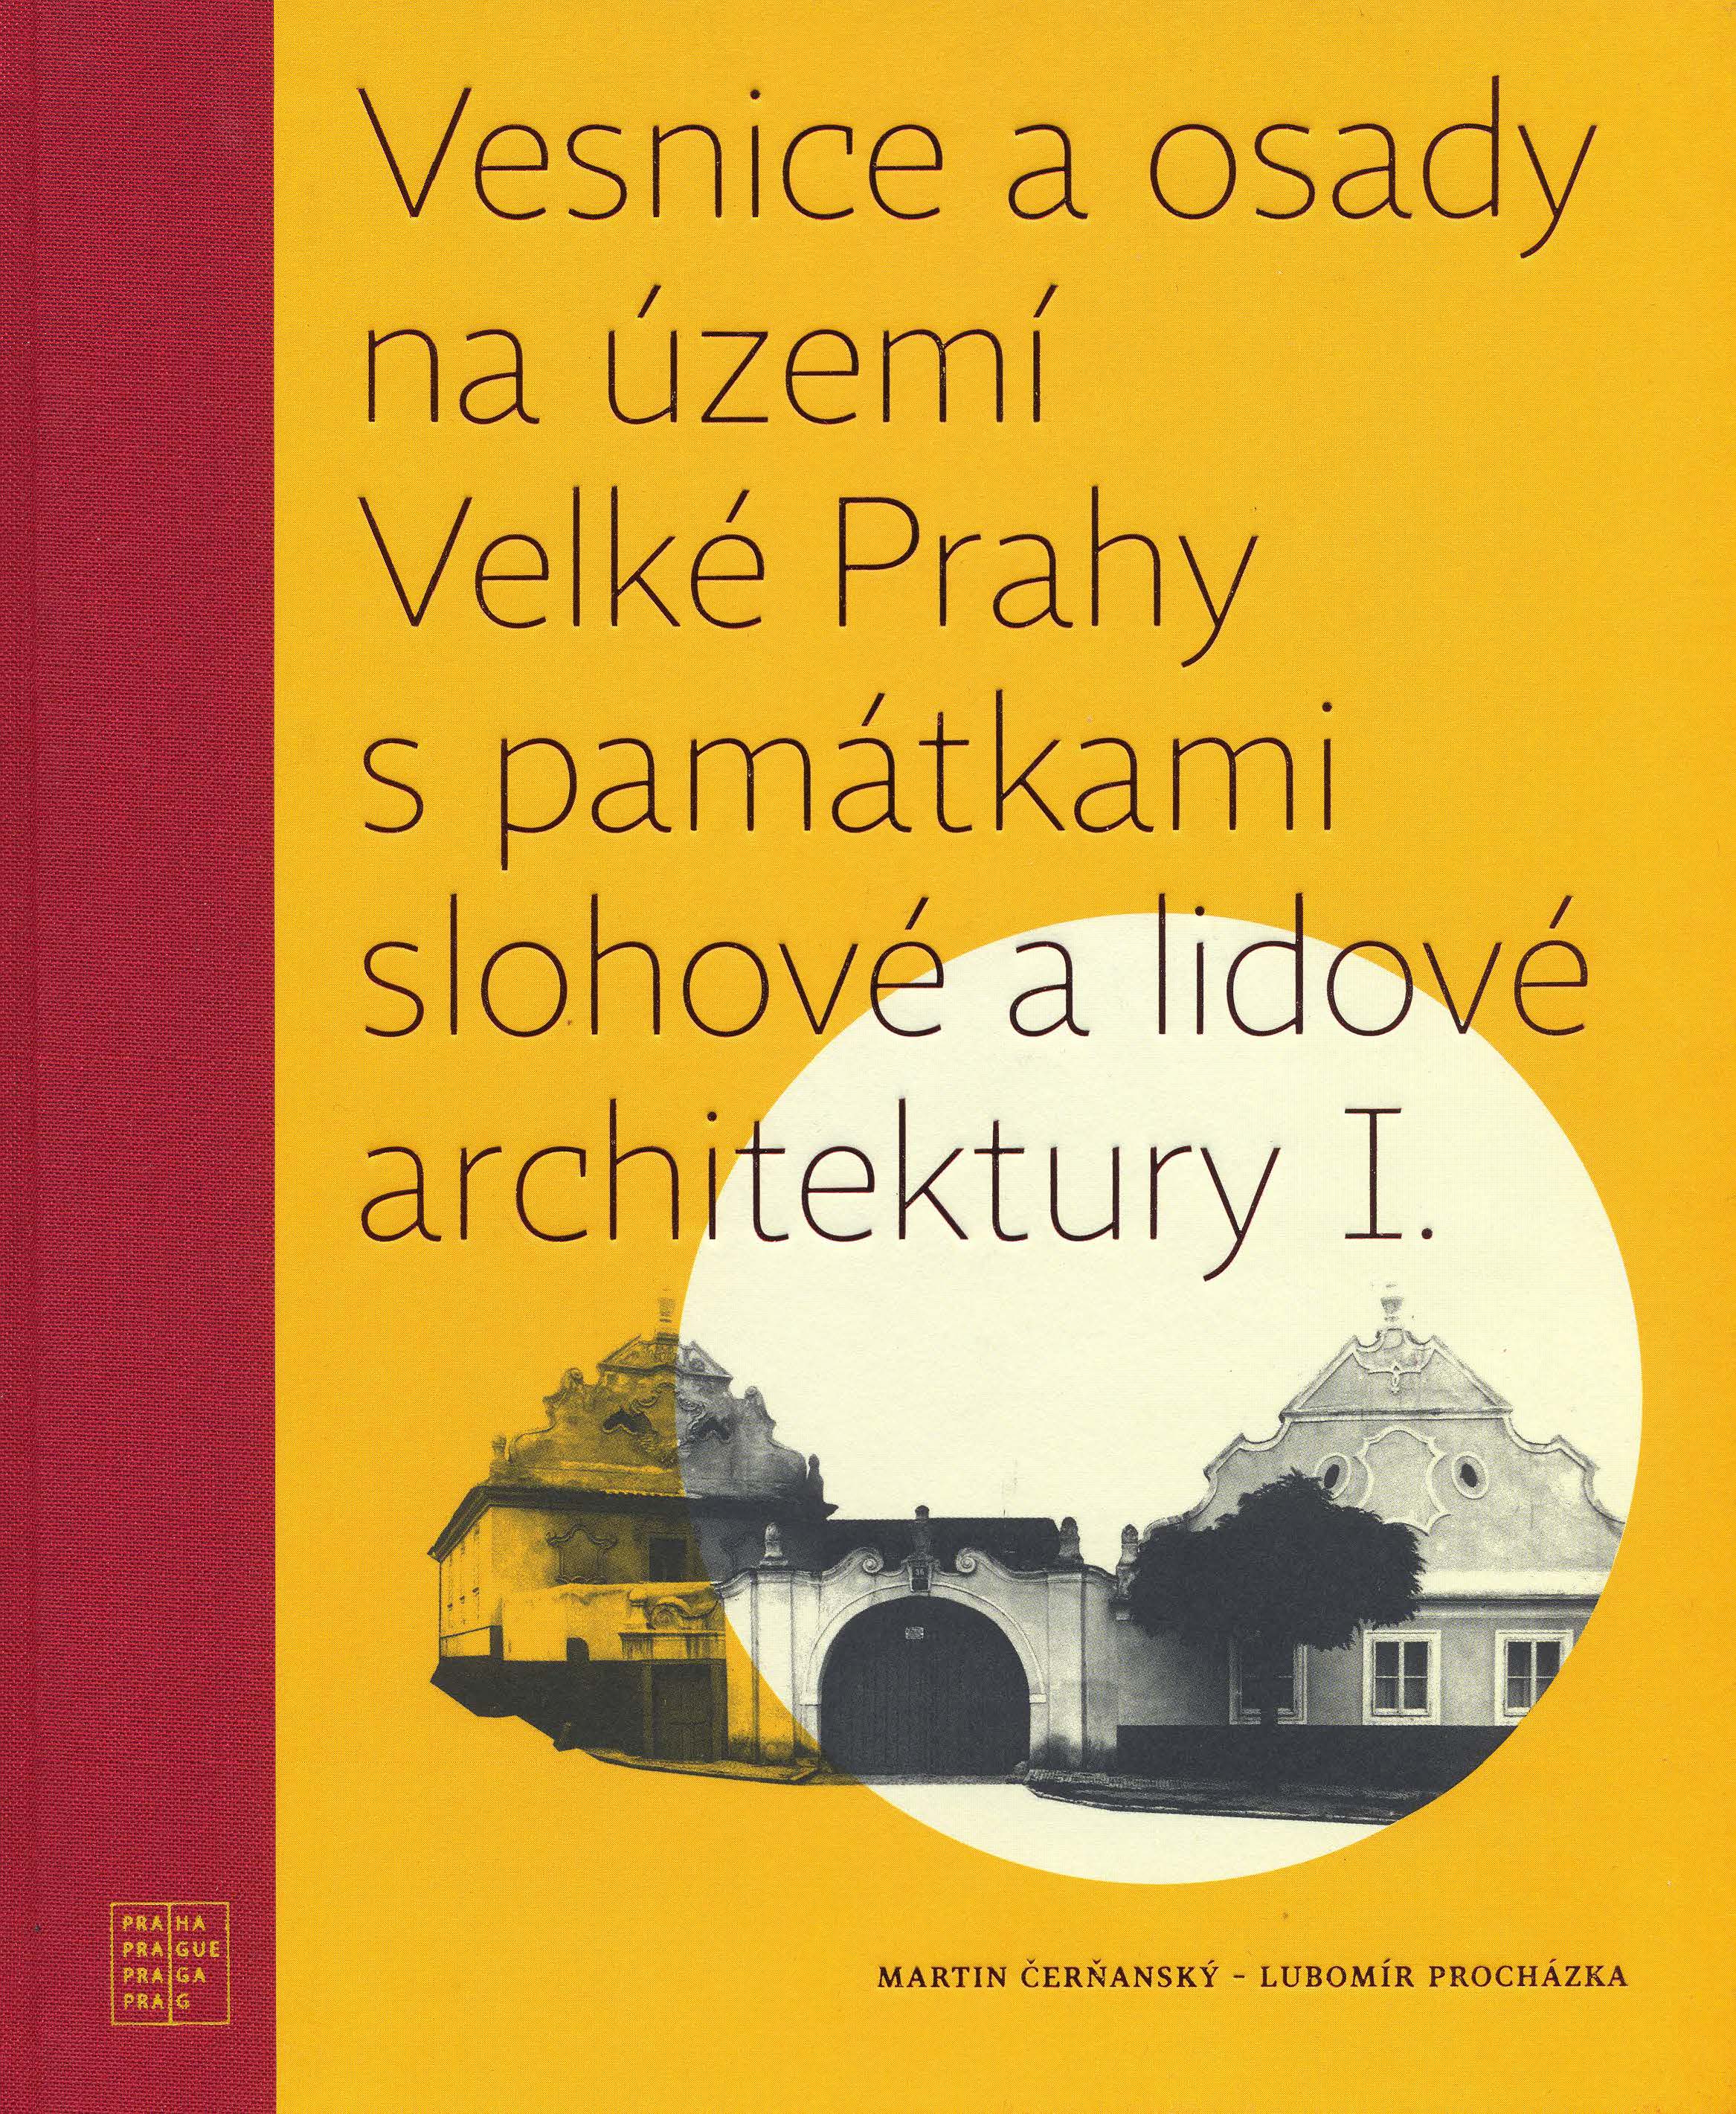 Vesnice a osady na území Velké Prahy